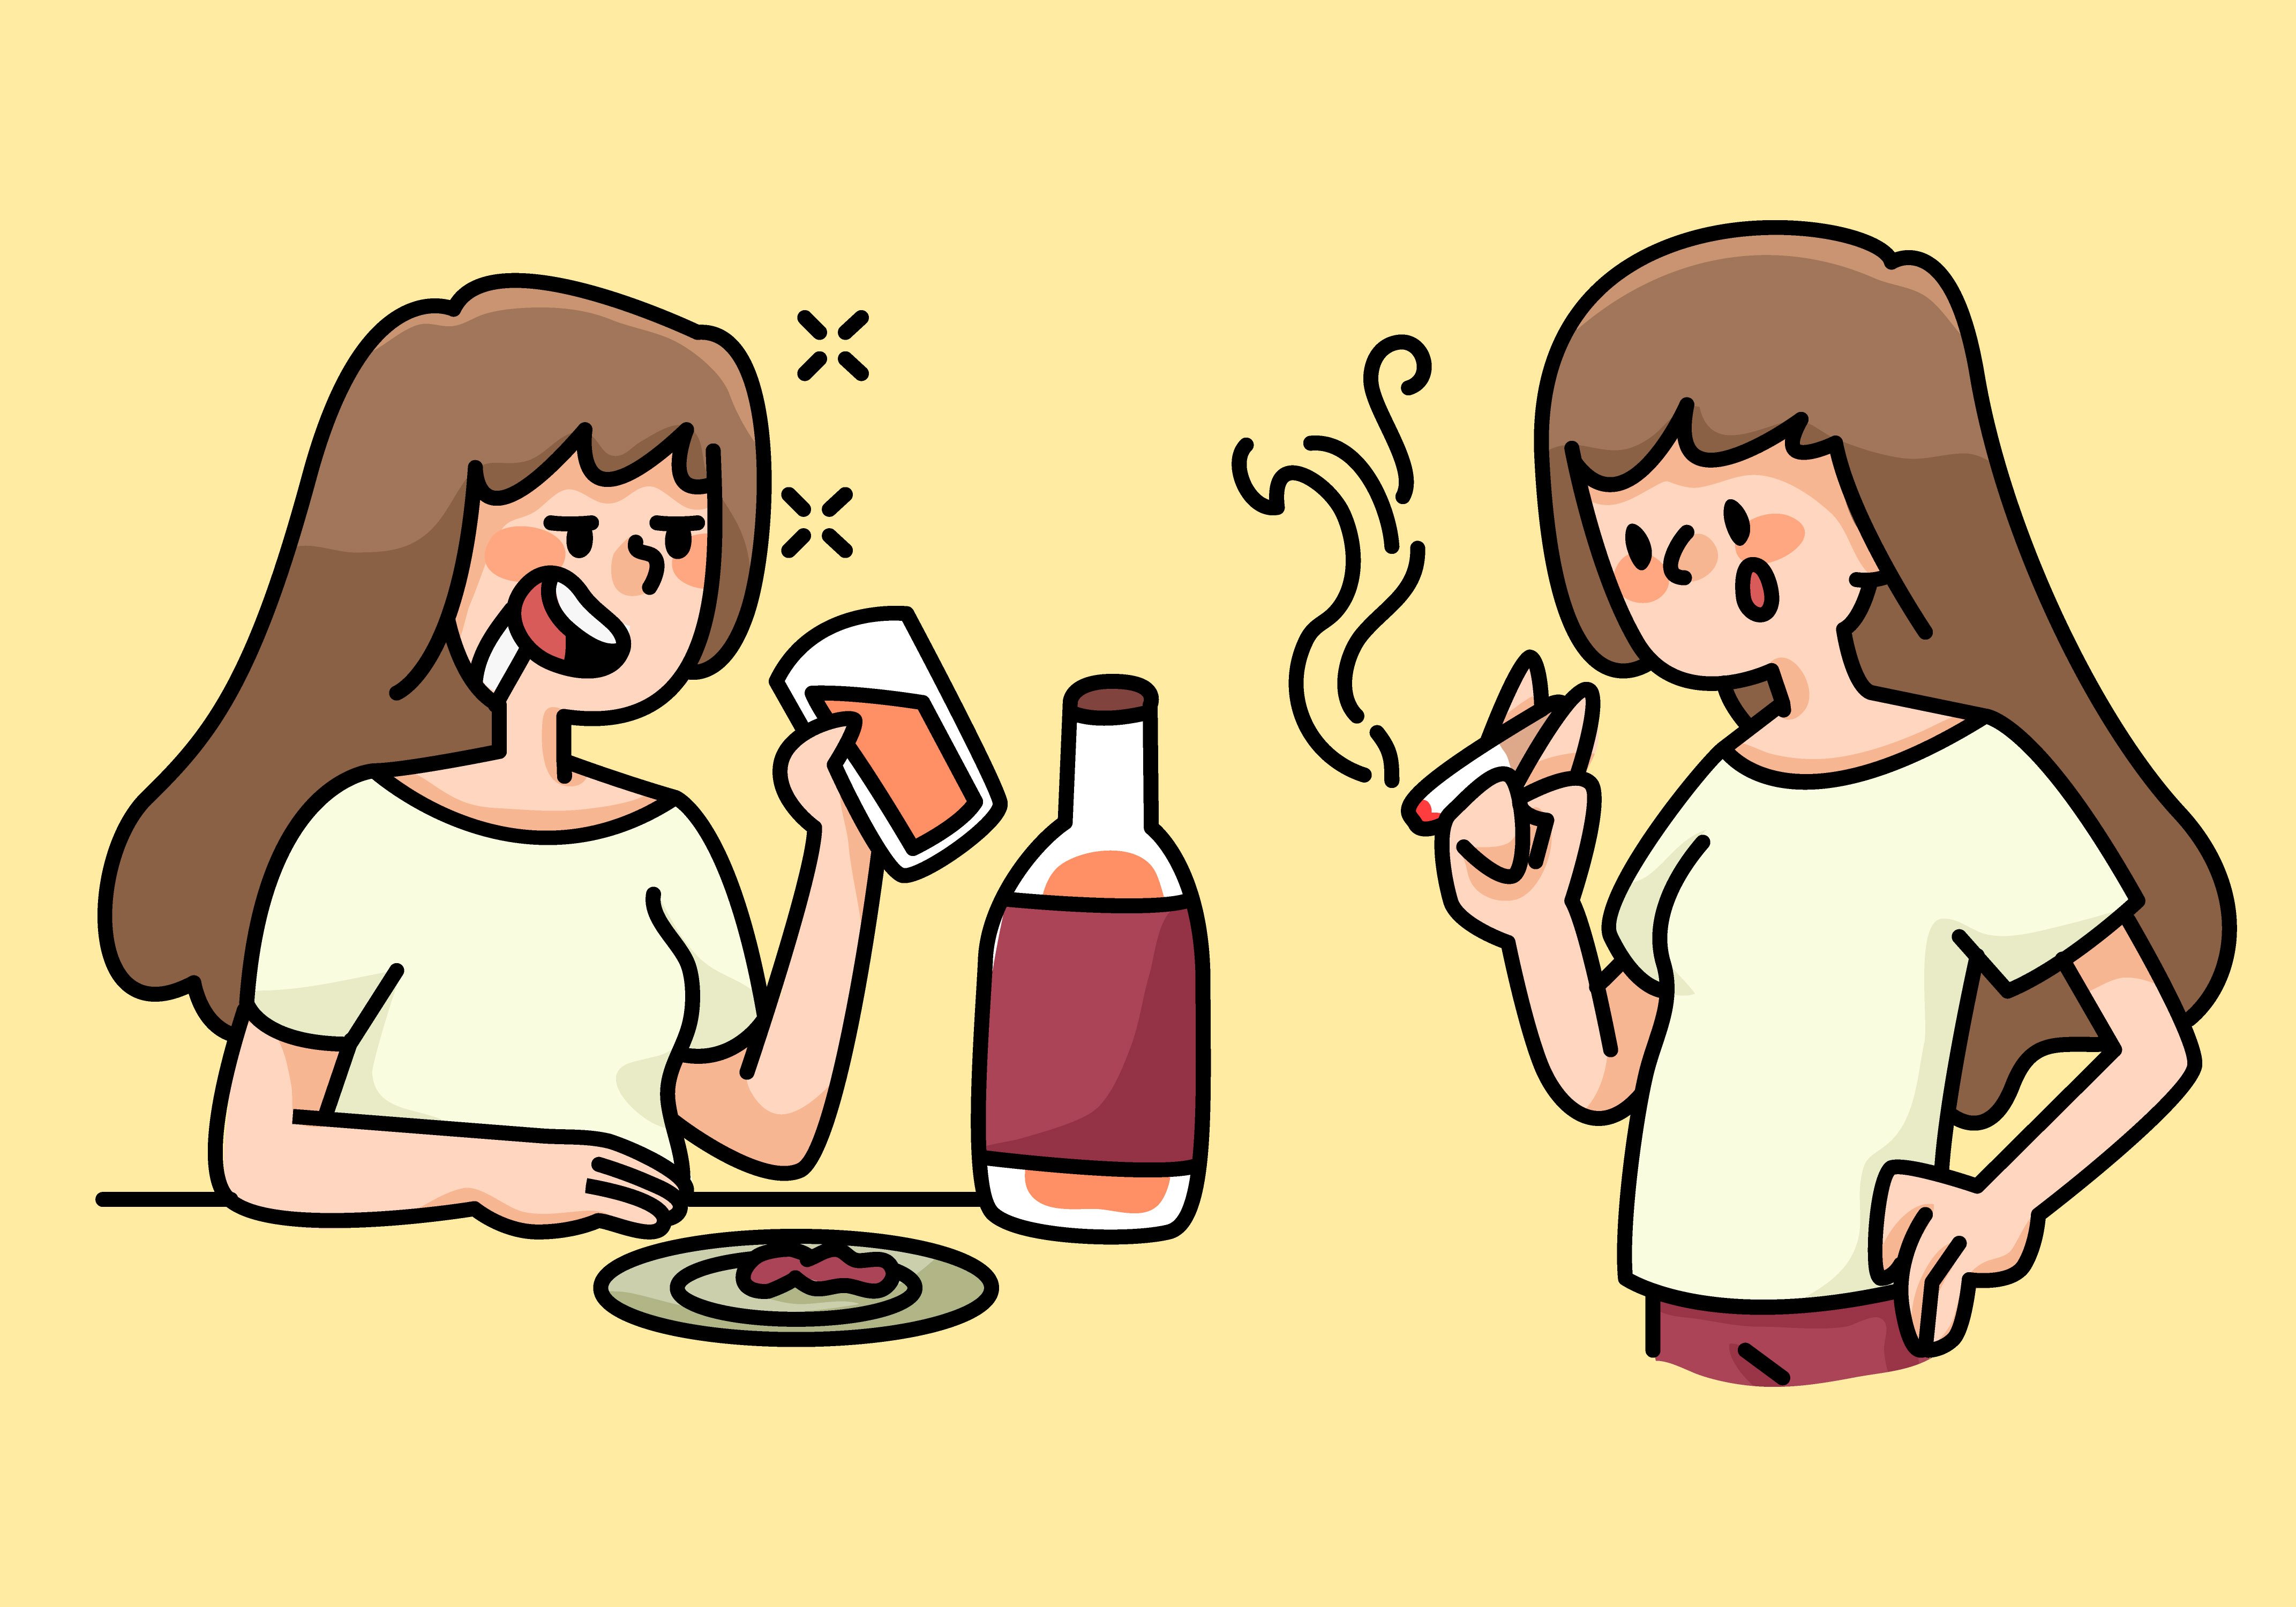 Мама пью курю. Вредные привычки карикатура. Пьющая женщина карикатура. Курящий и пьющий. Вредные привычки cartoon.